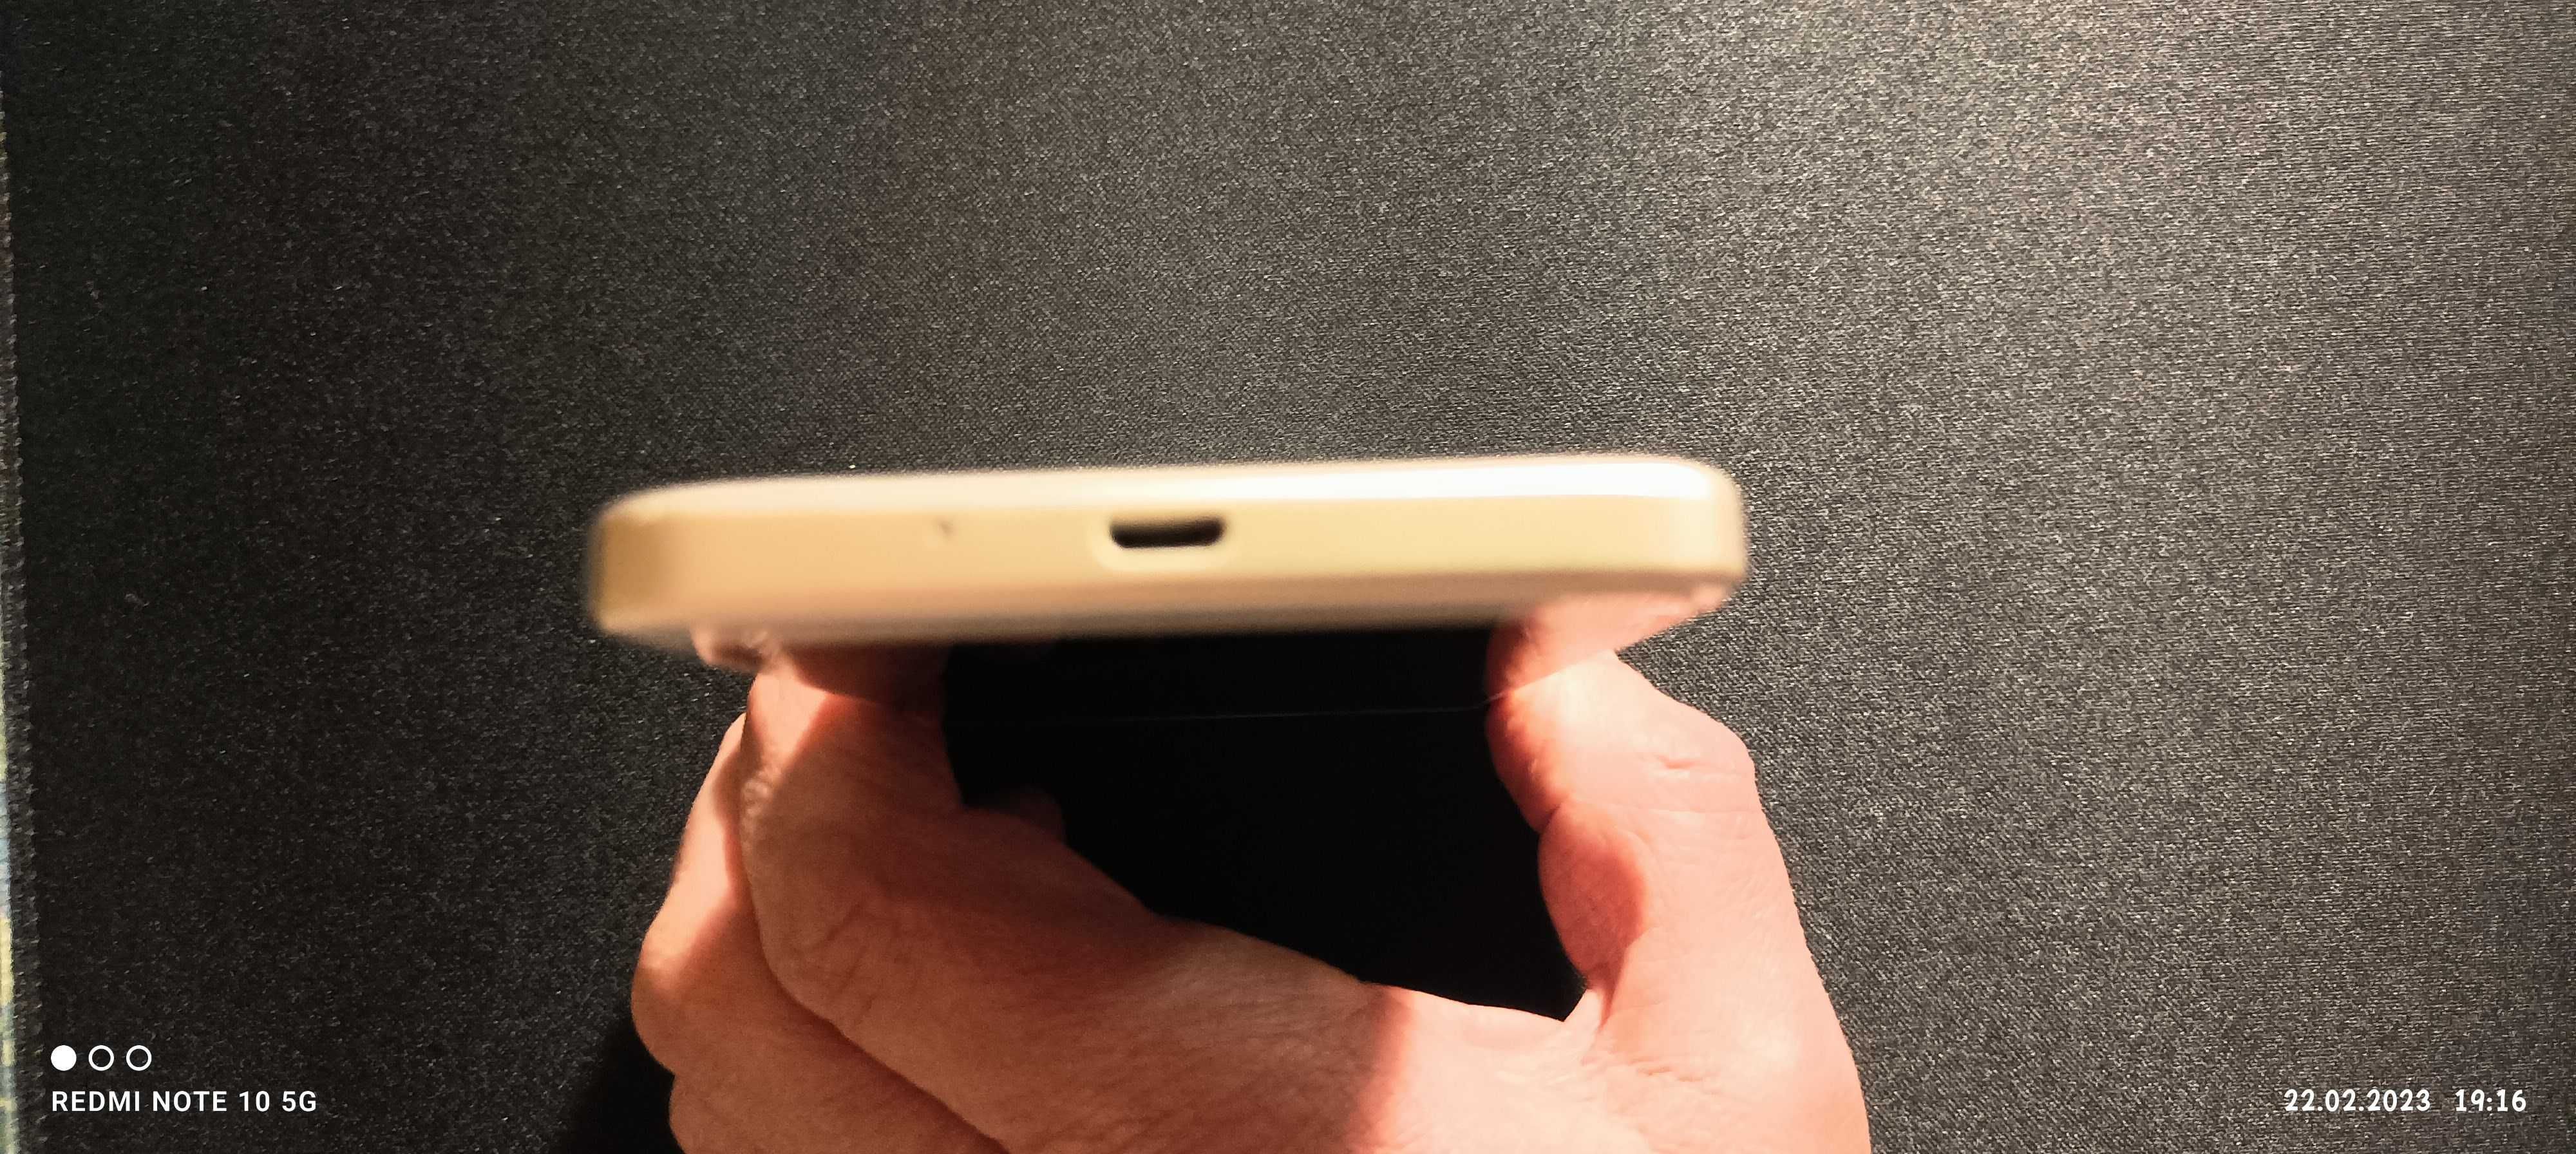 Смартфон - Xiaomi Redmi 4A